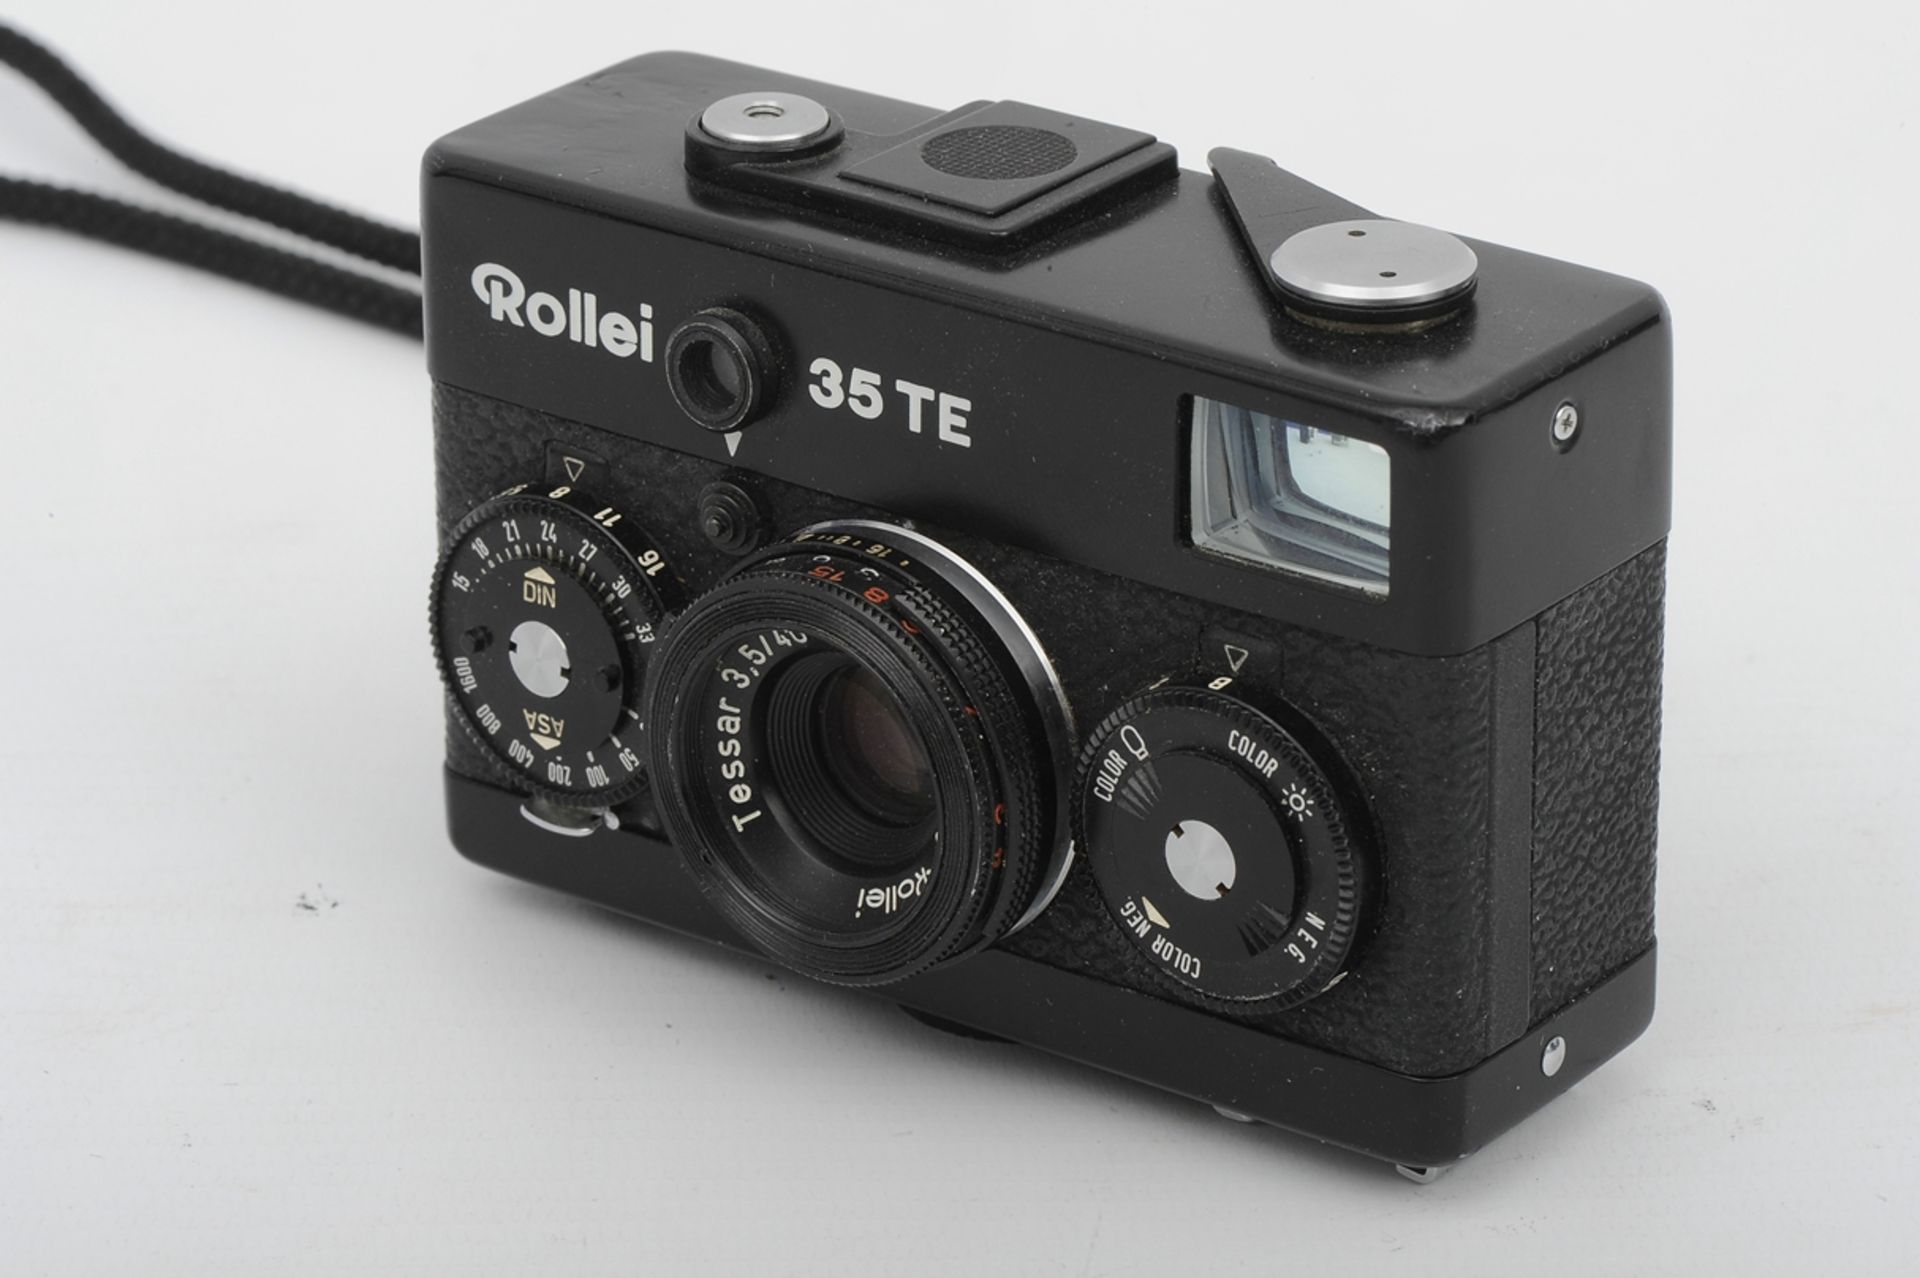 6teiliges Konvolut "ROLLEI" - Kameras und Zubehör, bestehend aus: 1 x 35T (unvollendete Reparatur), - Image 6 of 19